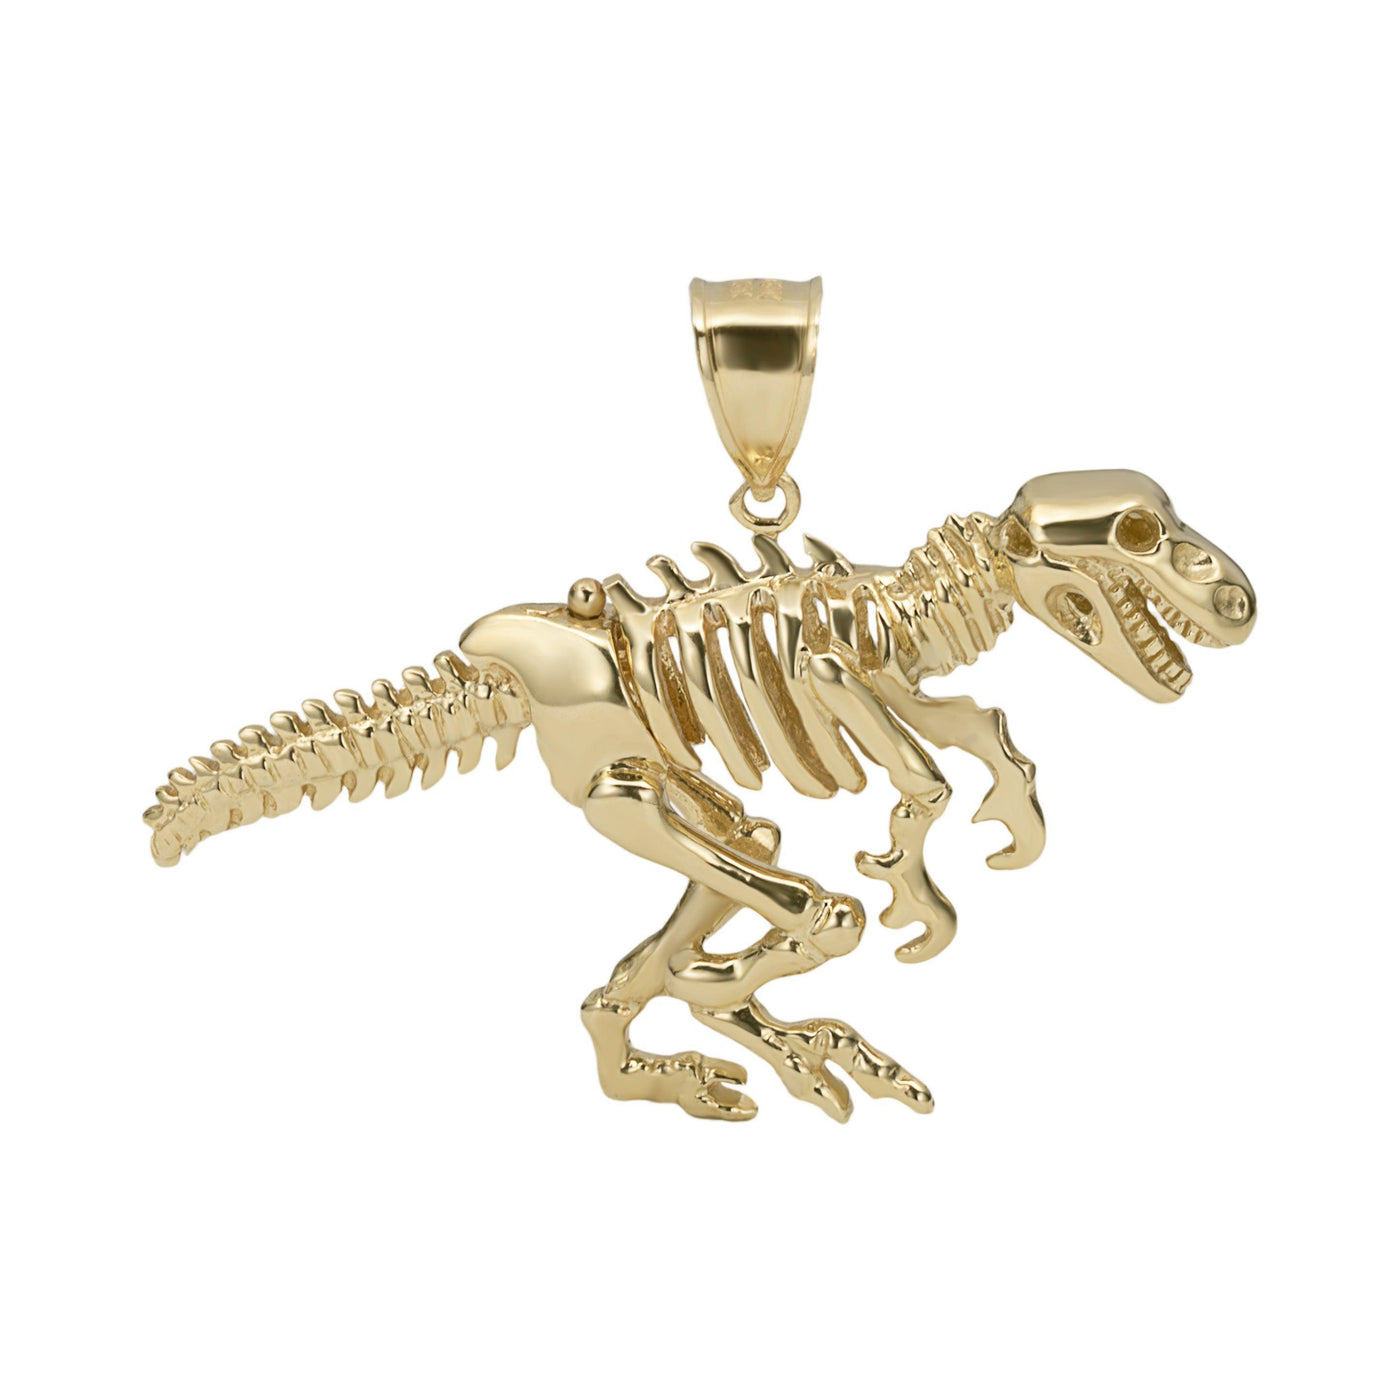 1 3/4" T-Rex Dinosaur Pendant Solid 10K Yellow Gold - bayamjewelry